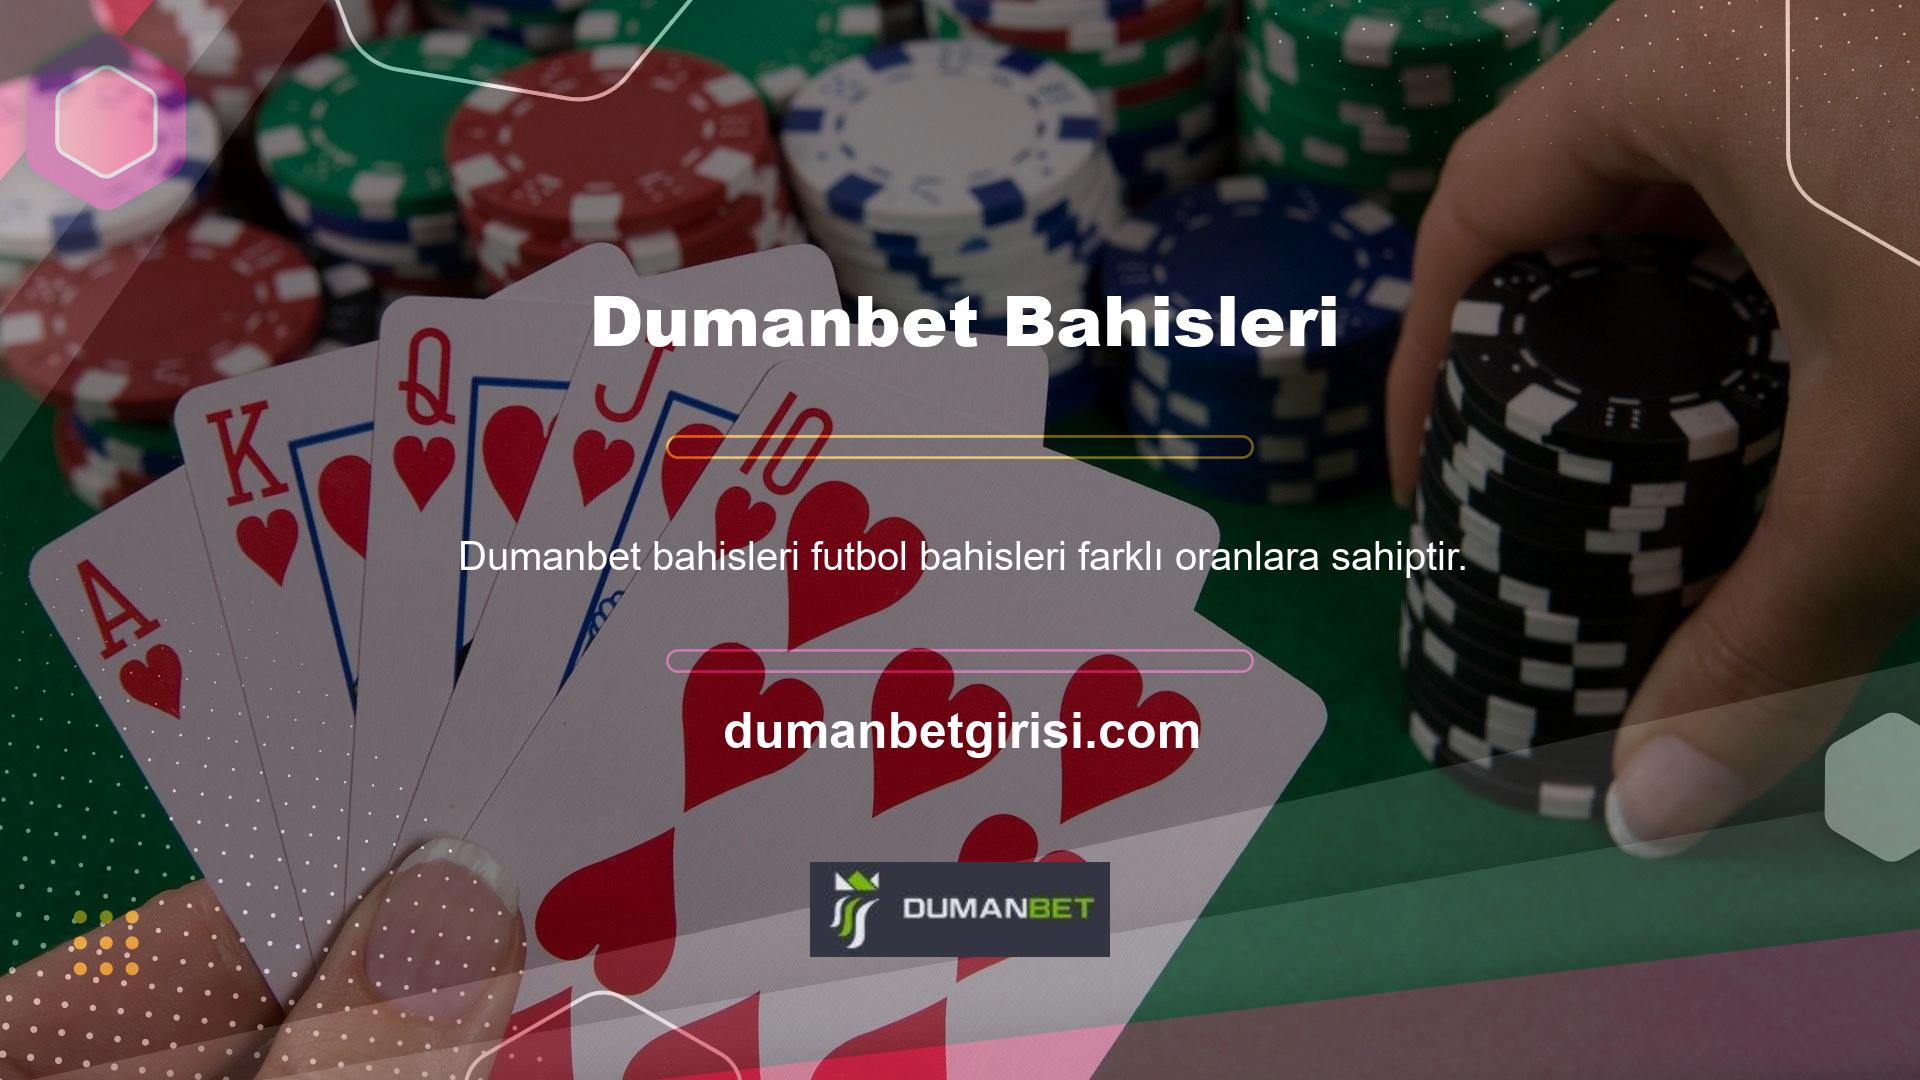 Ayrıca Dumanbet web sitesindeki canlı bahis özelliğini kullanarak ek futbol bahisleri de yapabilirsiniz